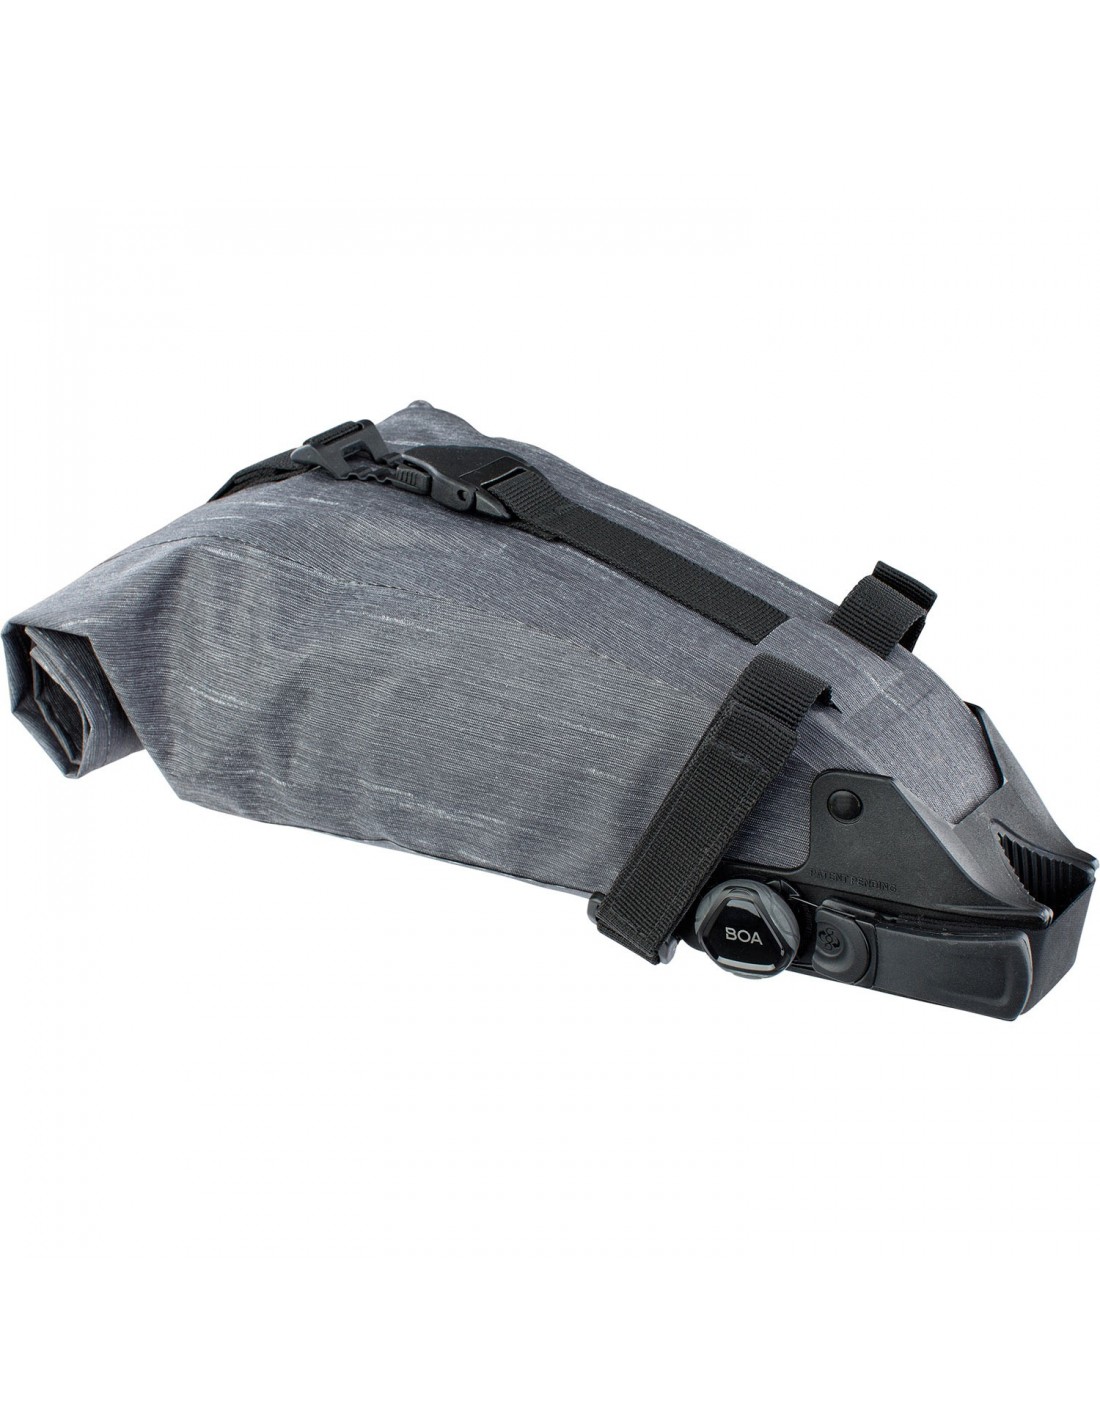 Evoc SEAT PACK Boa® Gr. S - Carbon Grey Taschenfarbe - Grau, Taschenvariante - Satteltasche, von Evoc